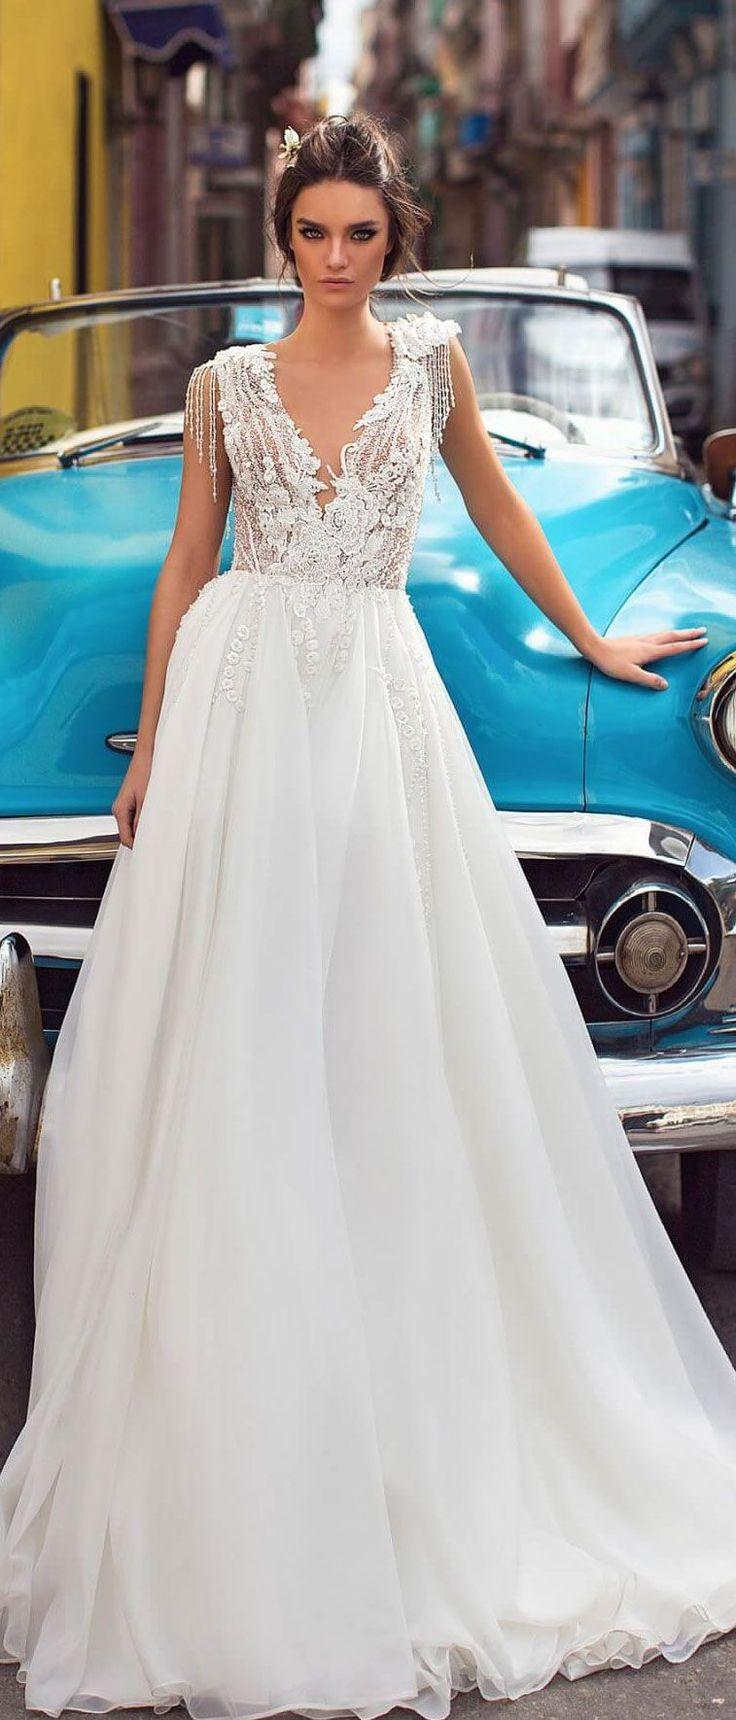 زفاف - Wedding Dress Inspiration